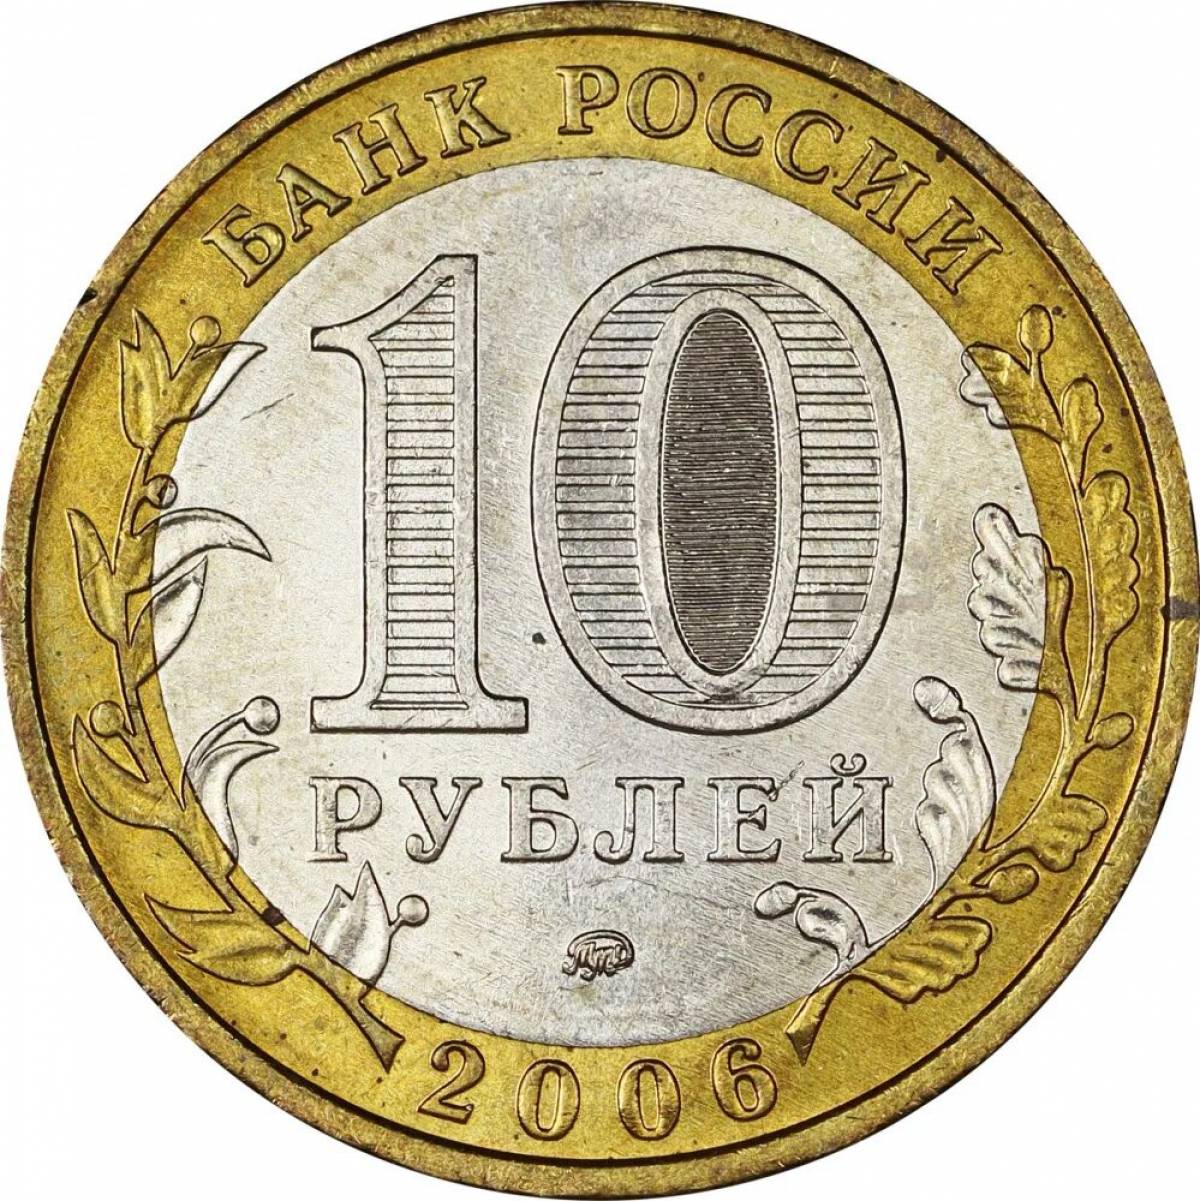 10 rubles for children #10